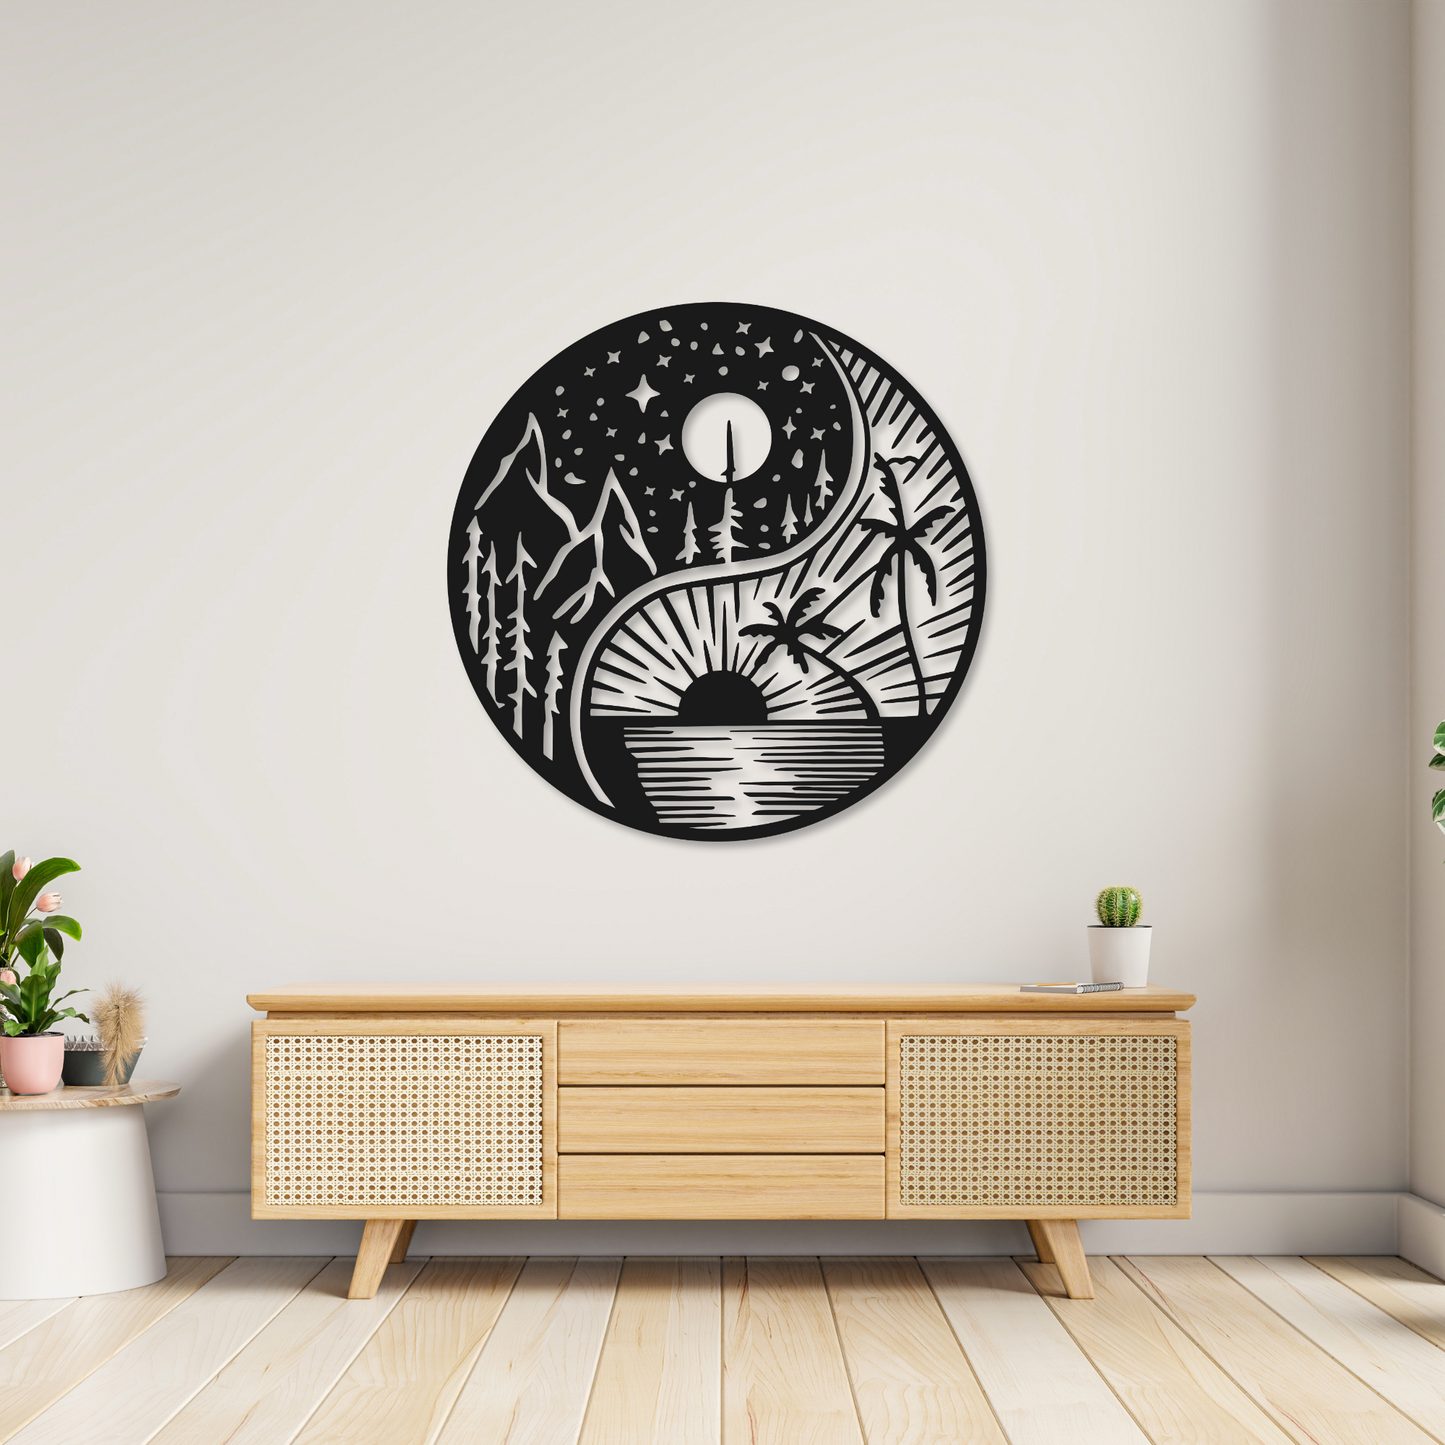 Yin & Yang Metal Wall Art Sign | Home Decor